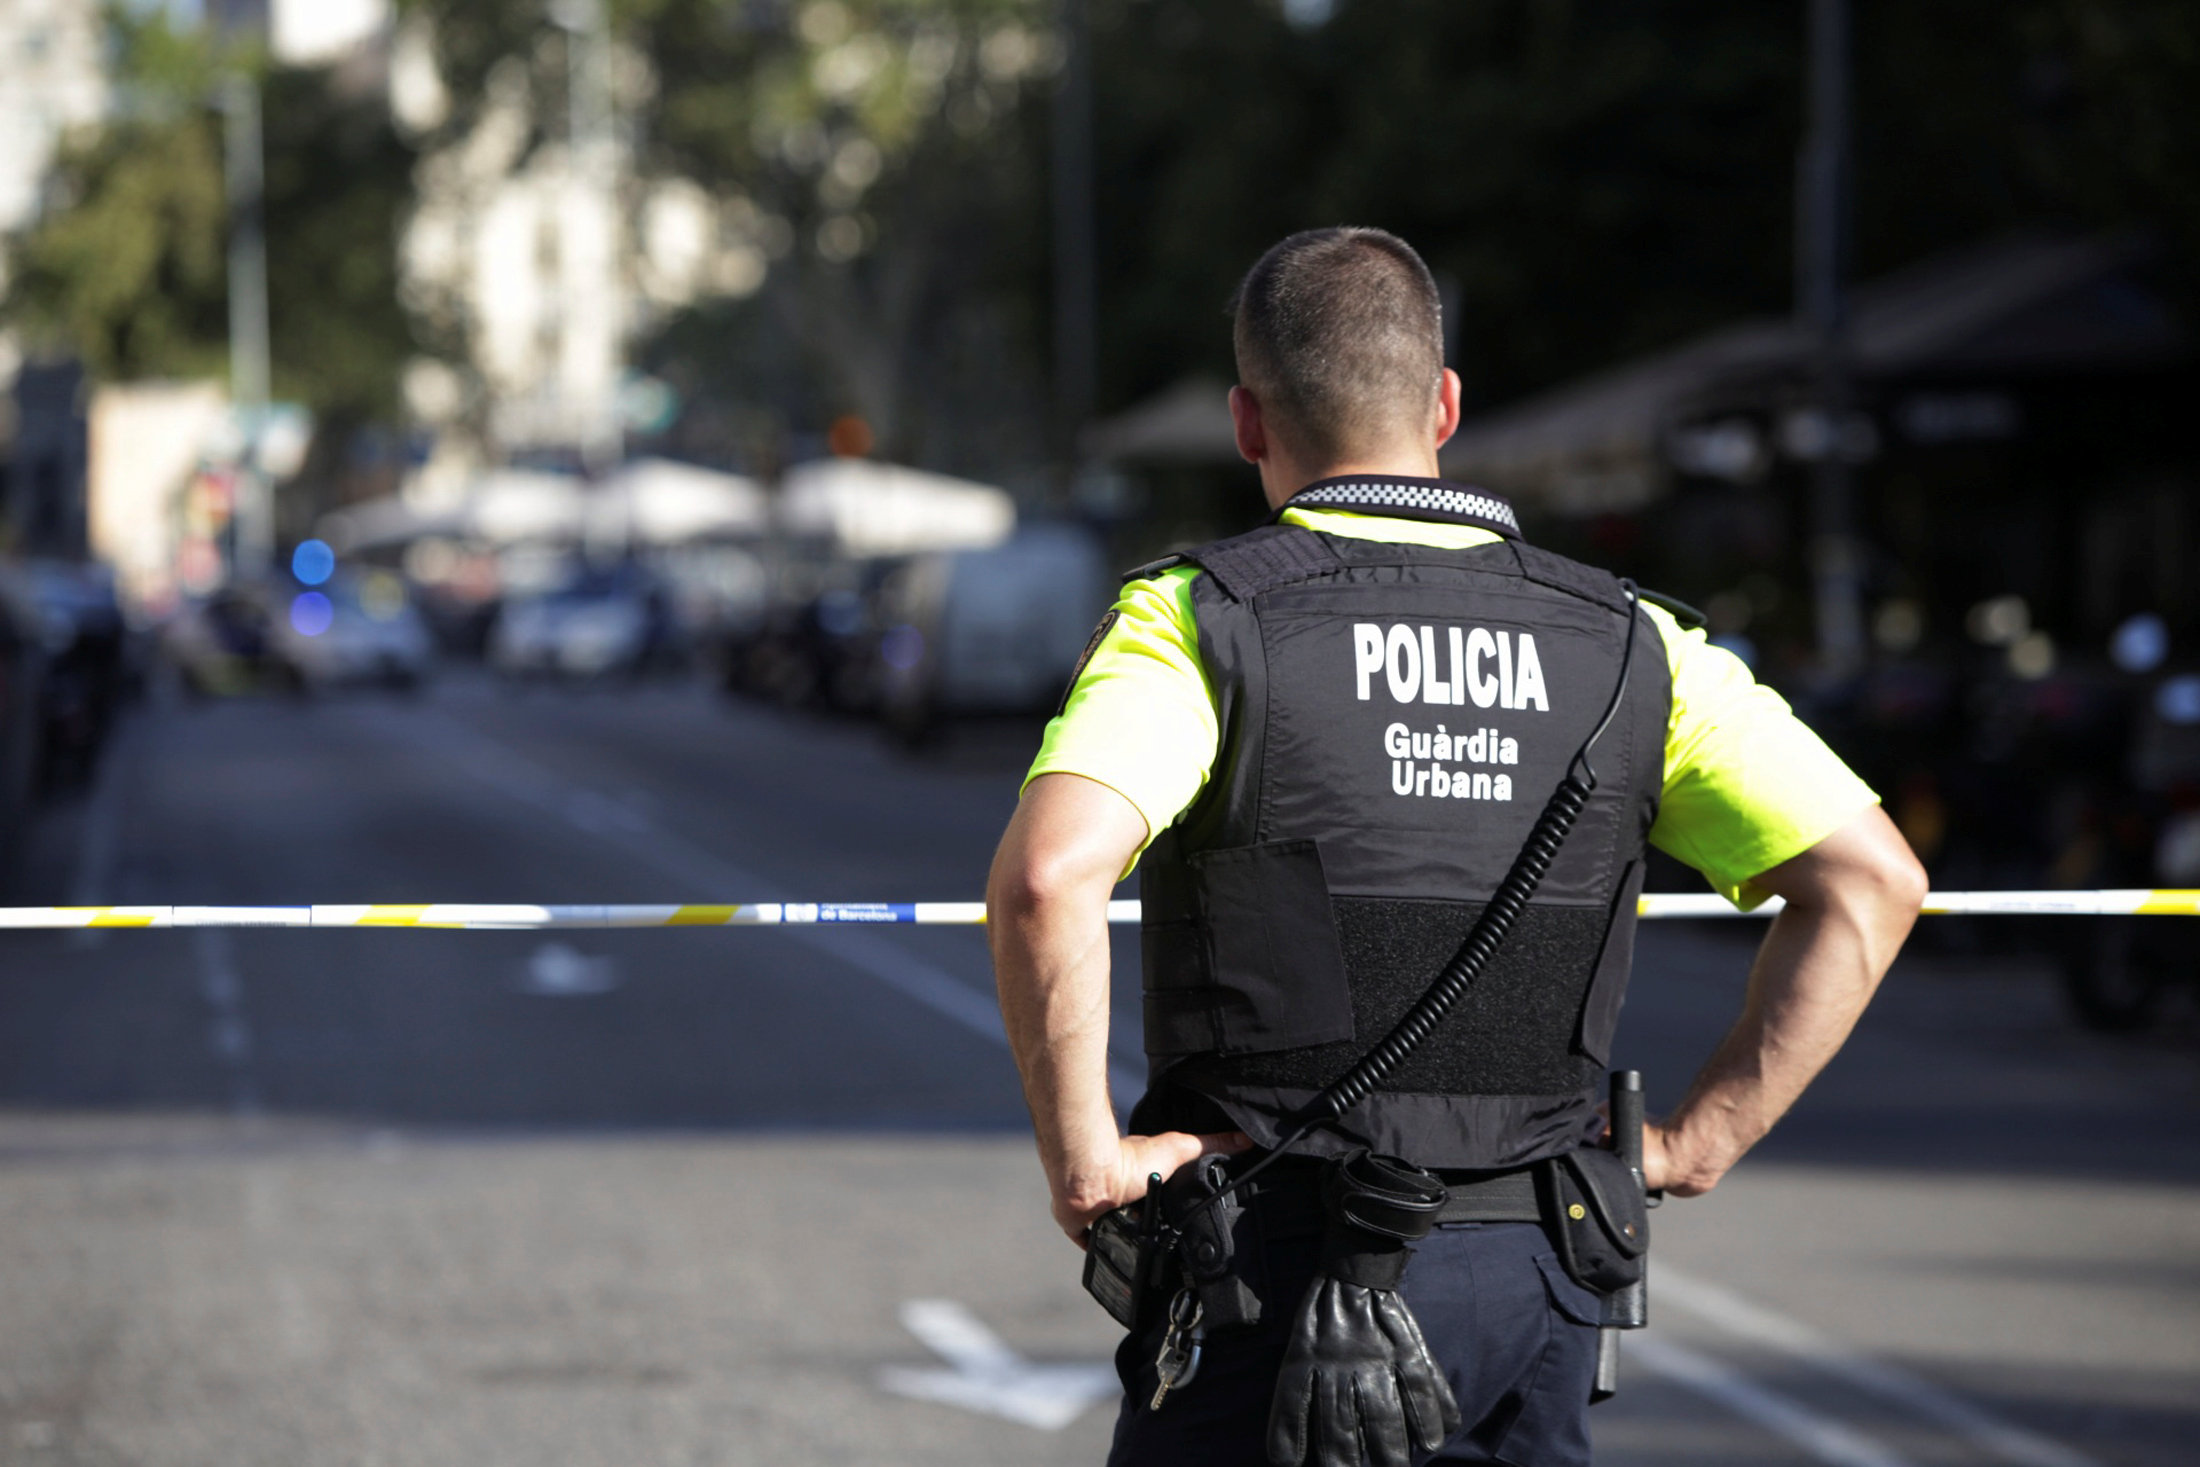 Confirman 13 muertos y 100 heridos durante atentado terrorista Barcelona